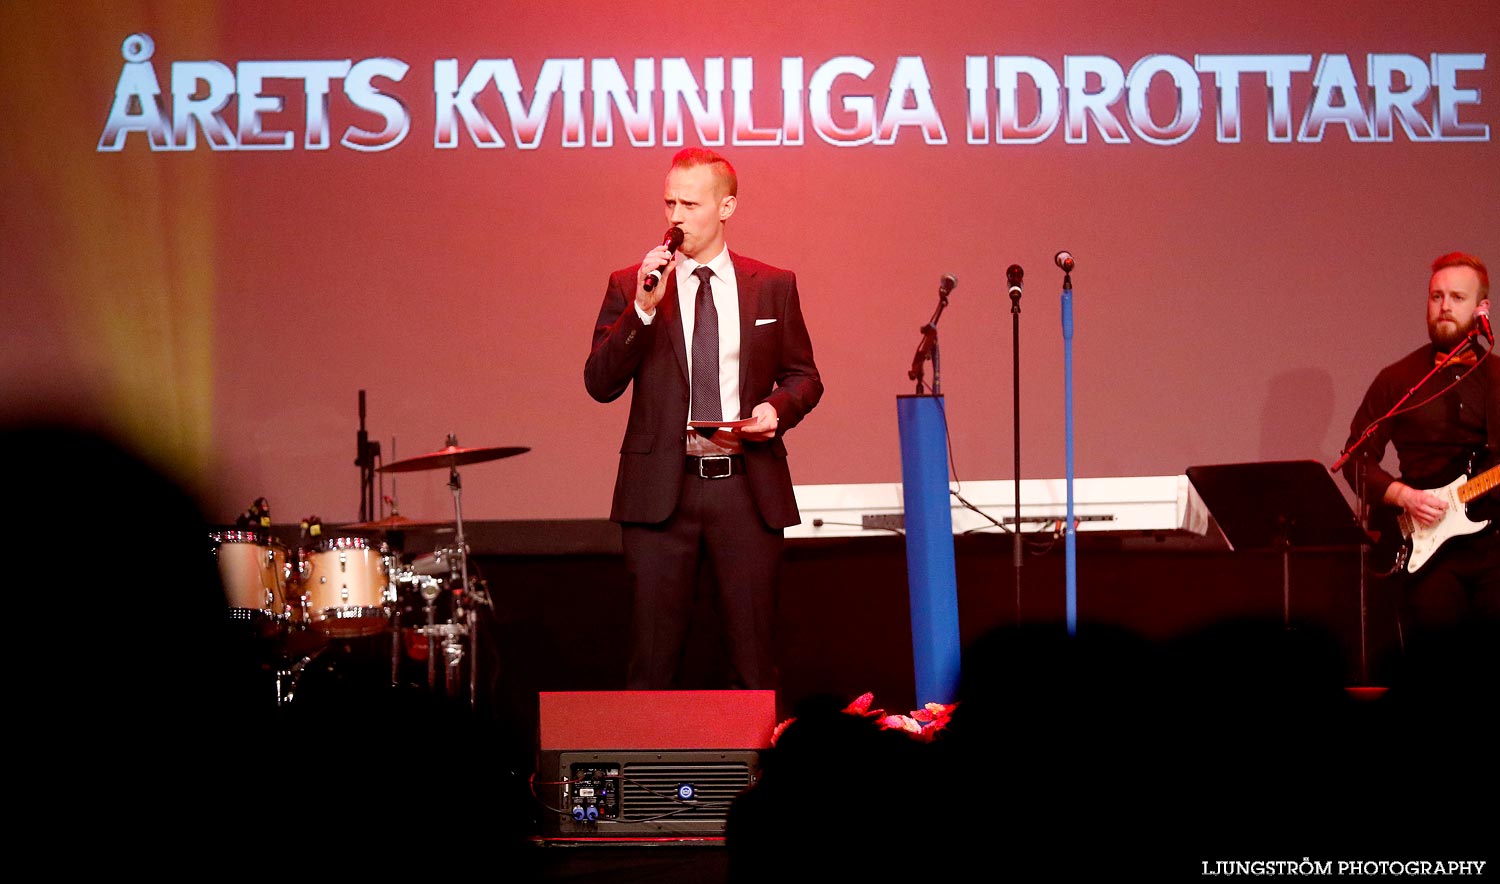 Skövde Idrottsgala 2015,mix,Arena Skövde,Skövde,Sverige,Konsert/Gala,,2015,103386